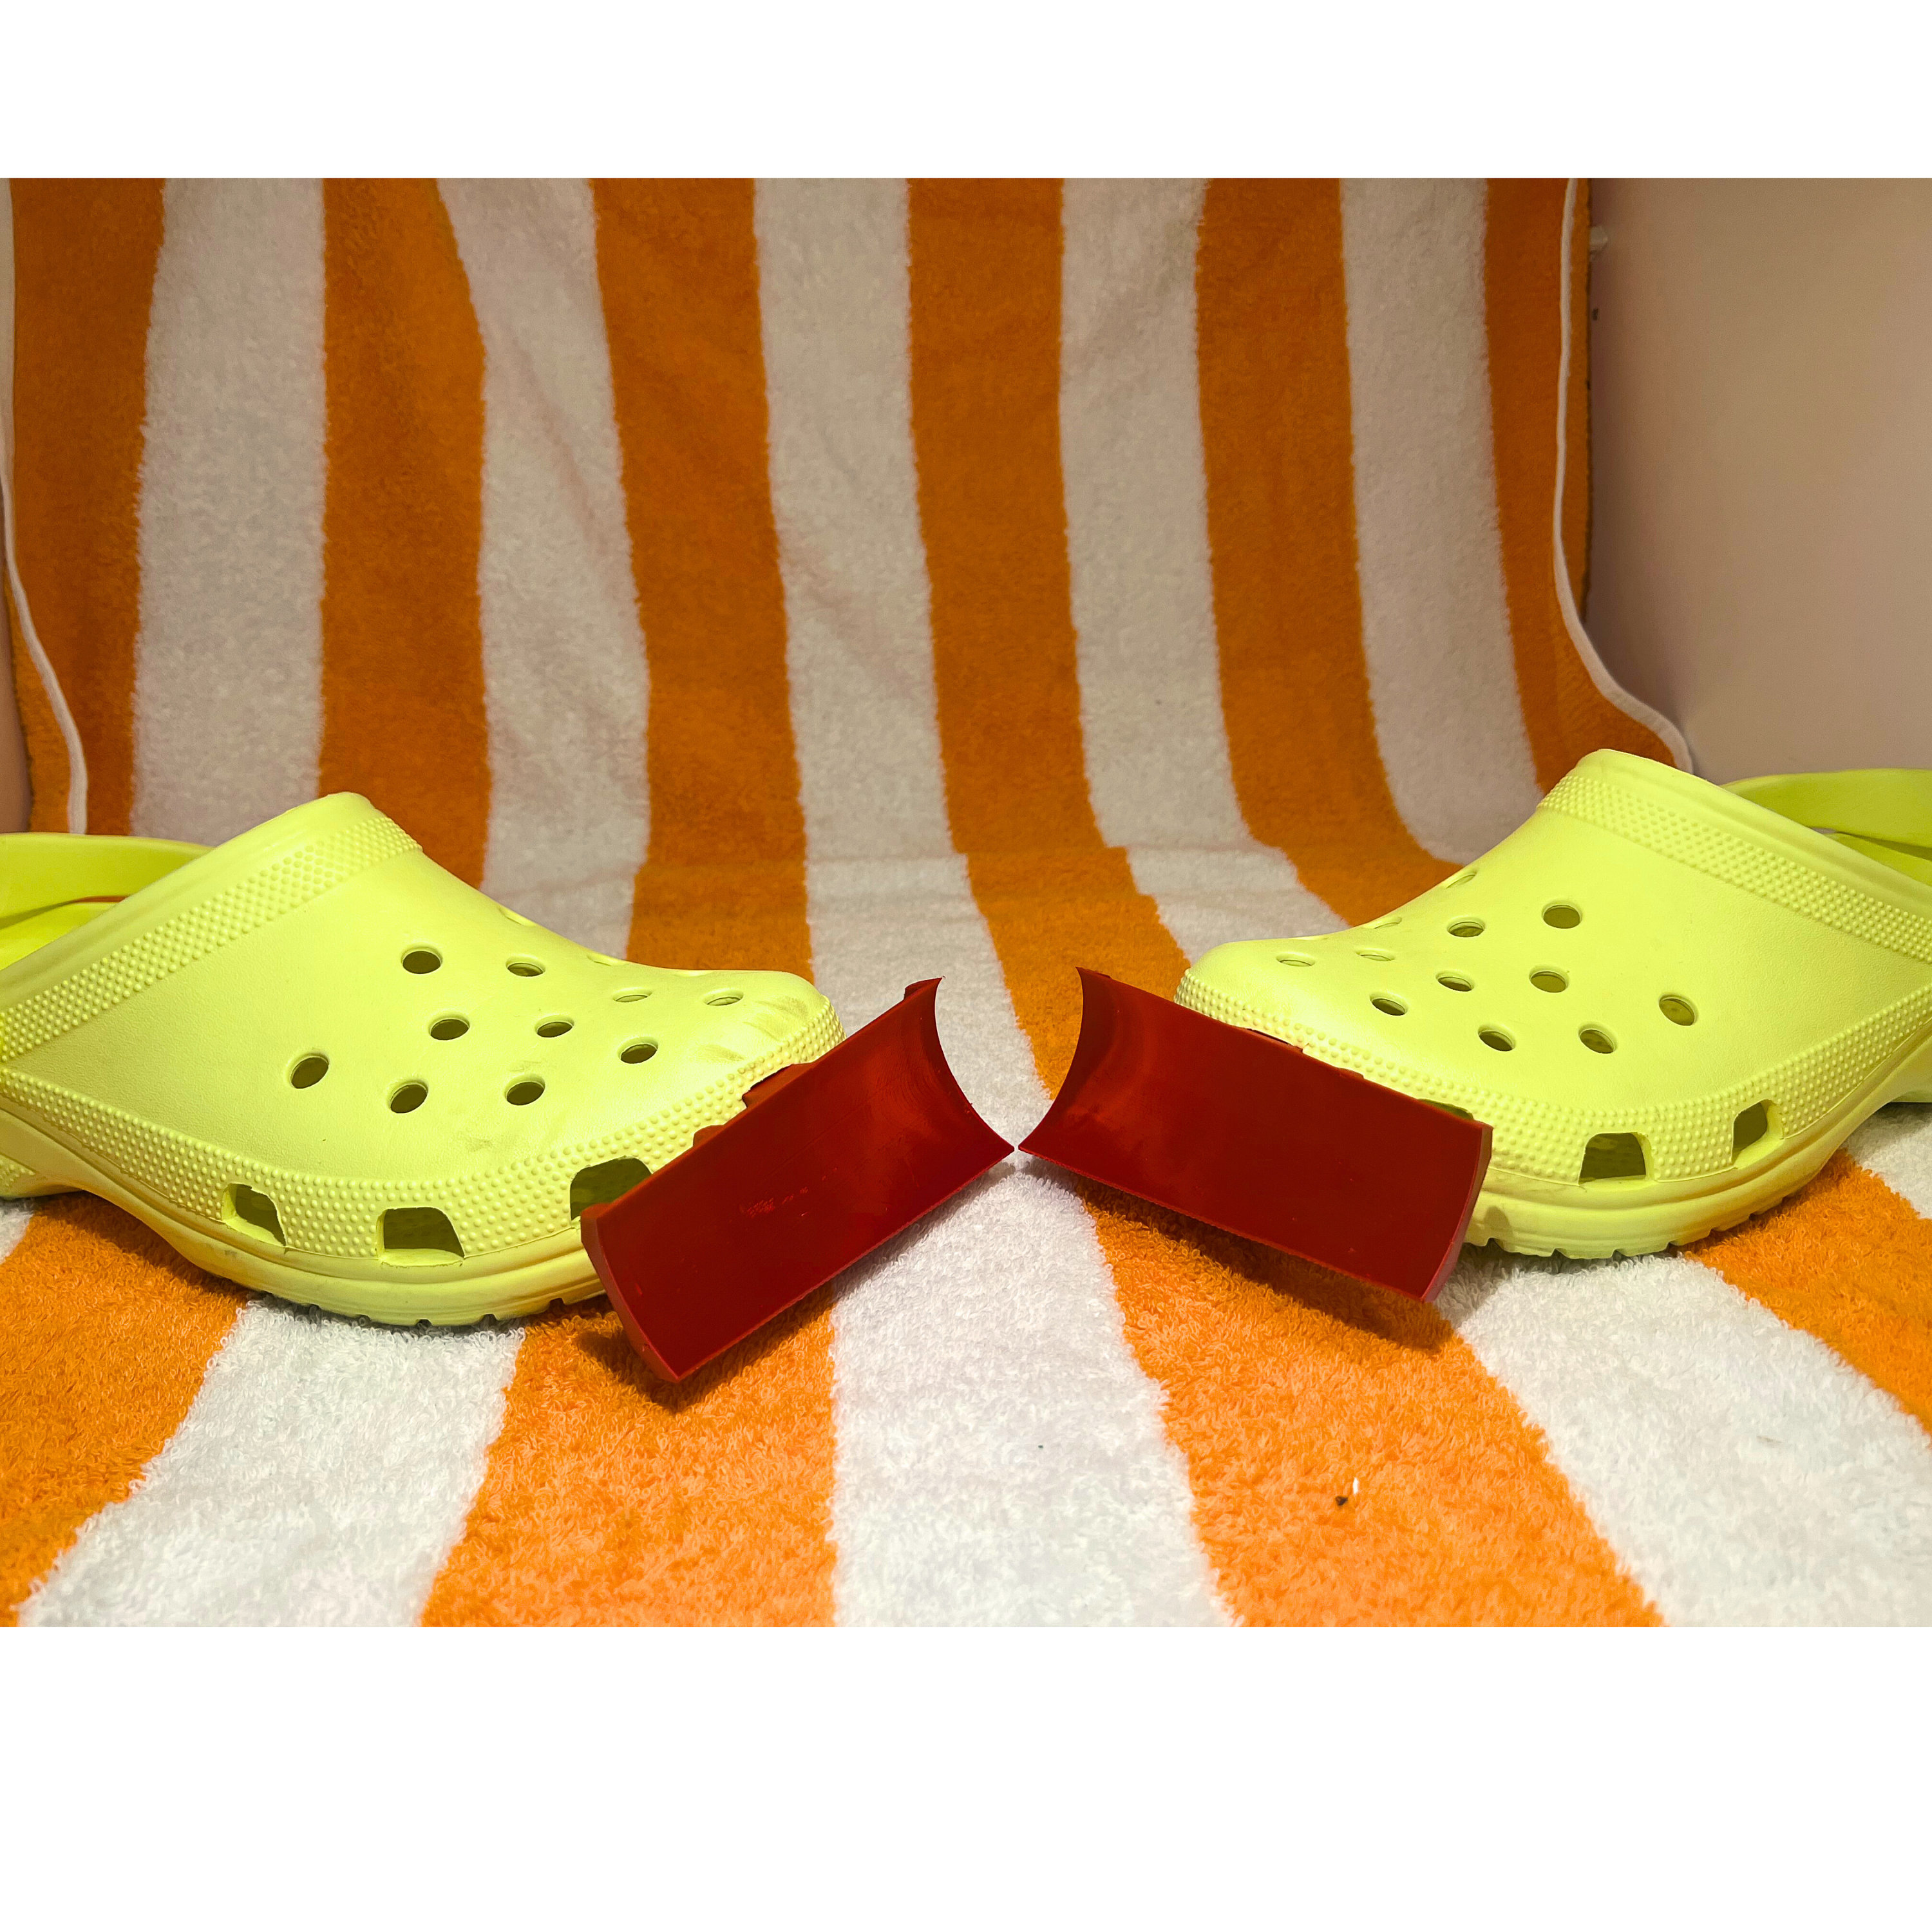 3D Printed Crocs Snow Plow Croc Plows -  Norway